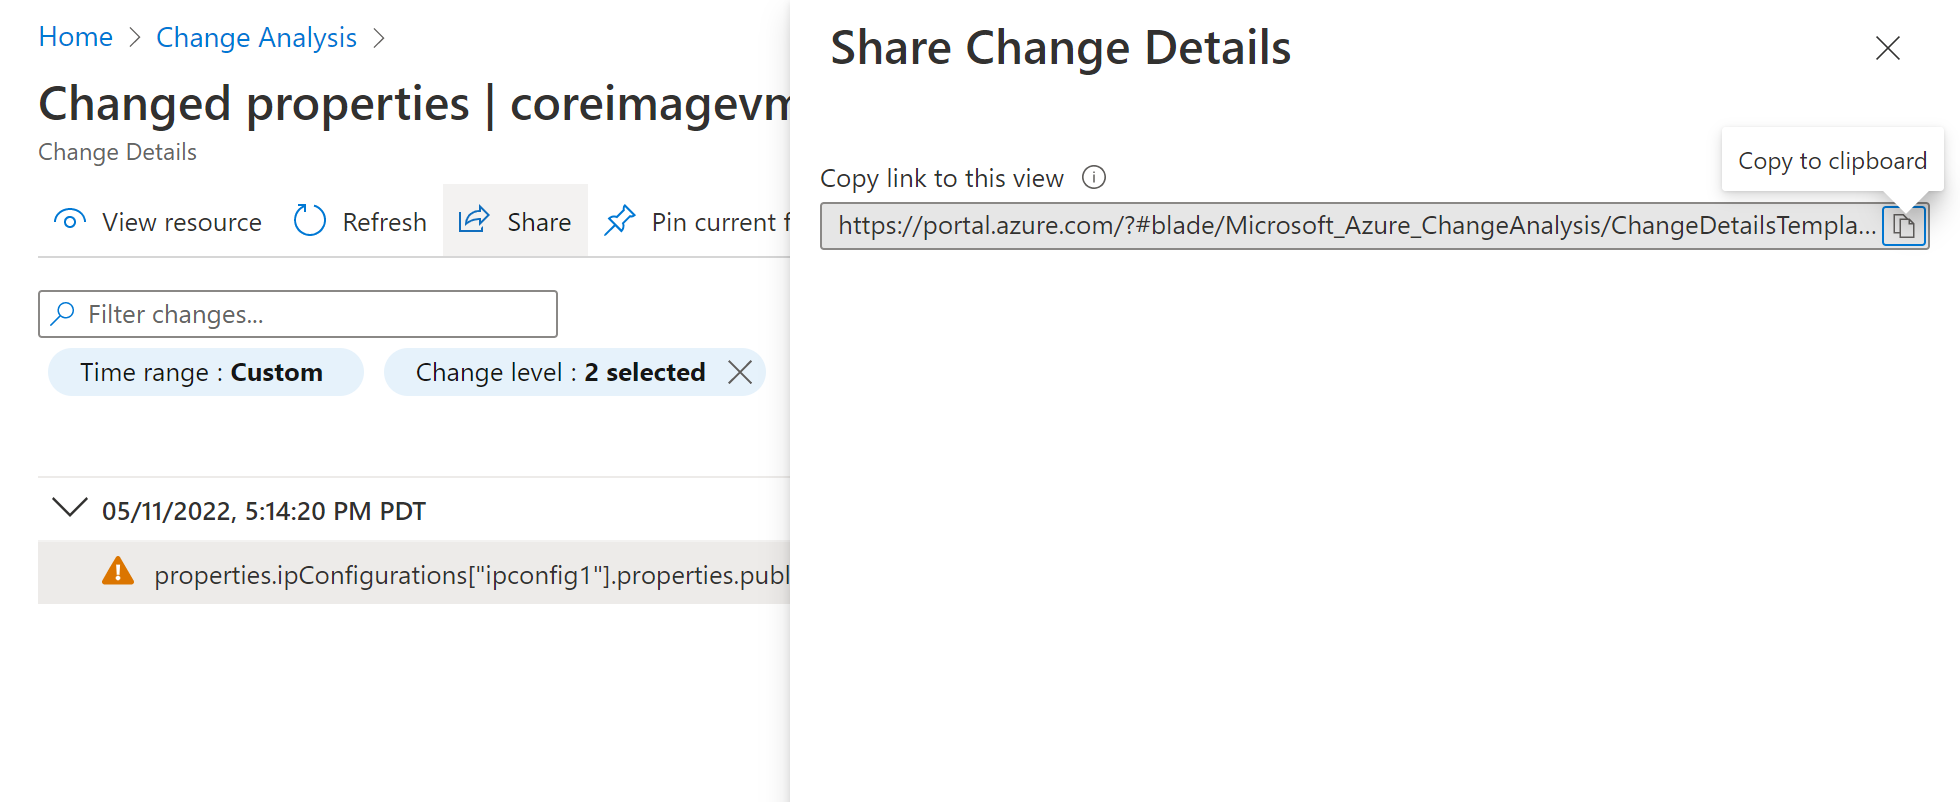 Captura de tela mostrando a seleção do botão de compartilhamento no painel e copiando o link.